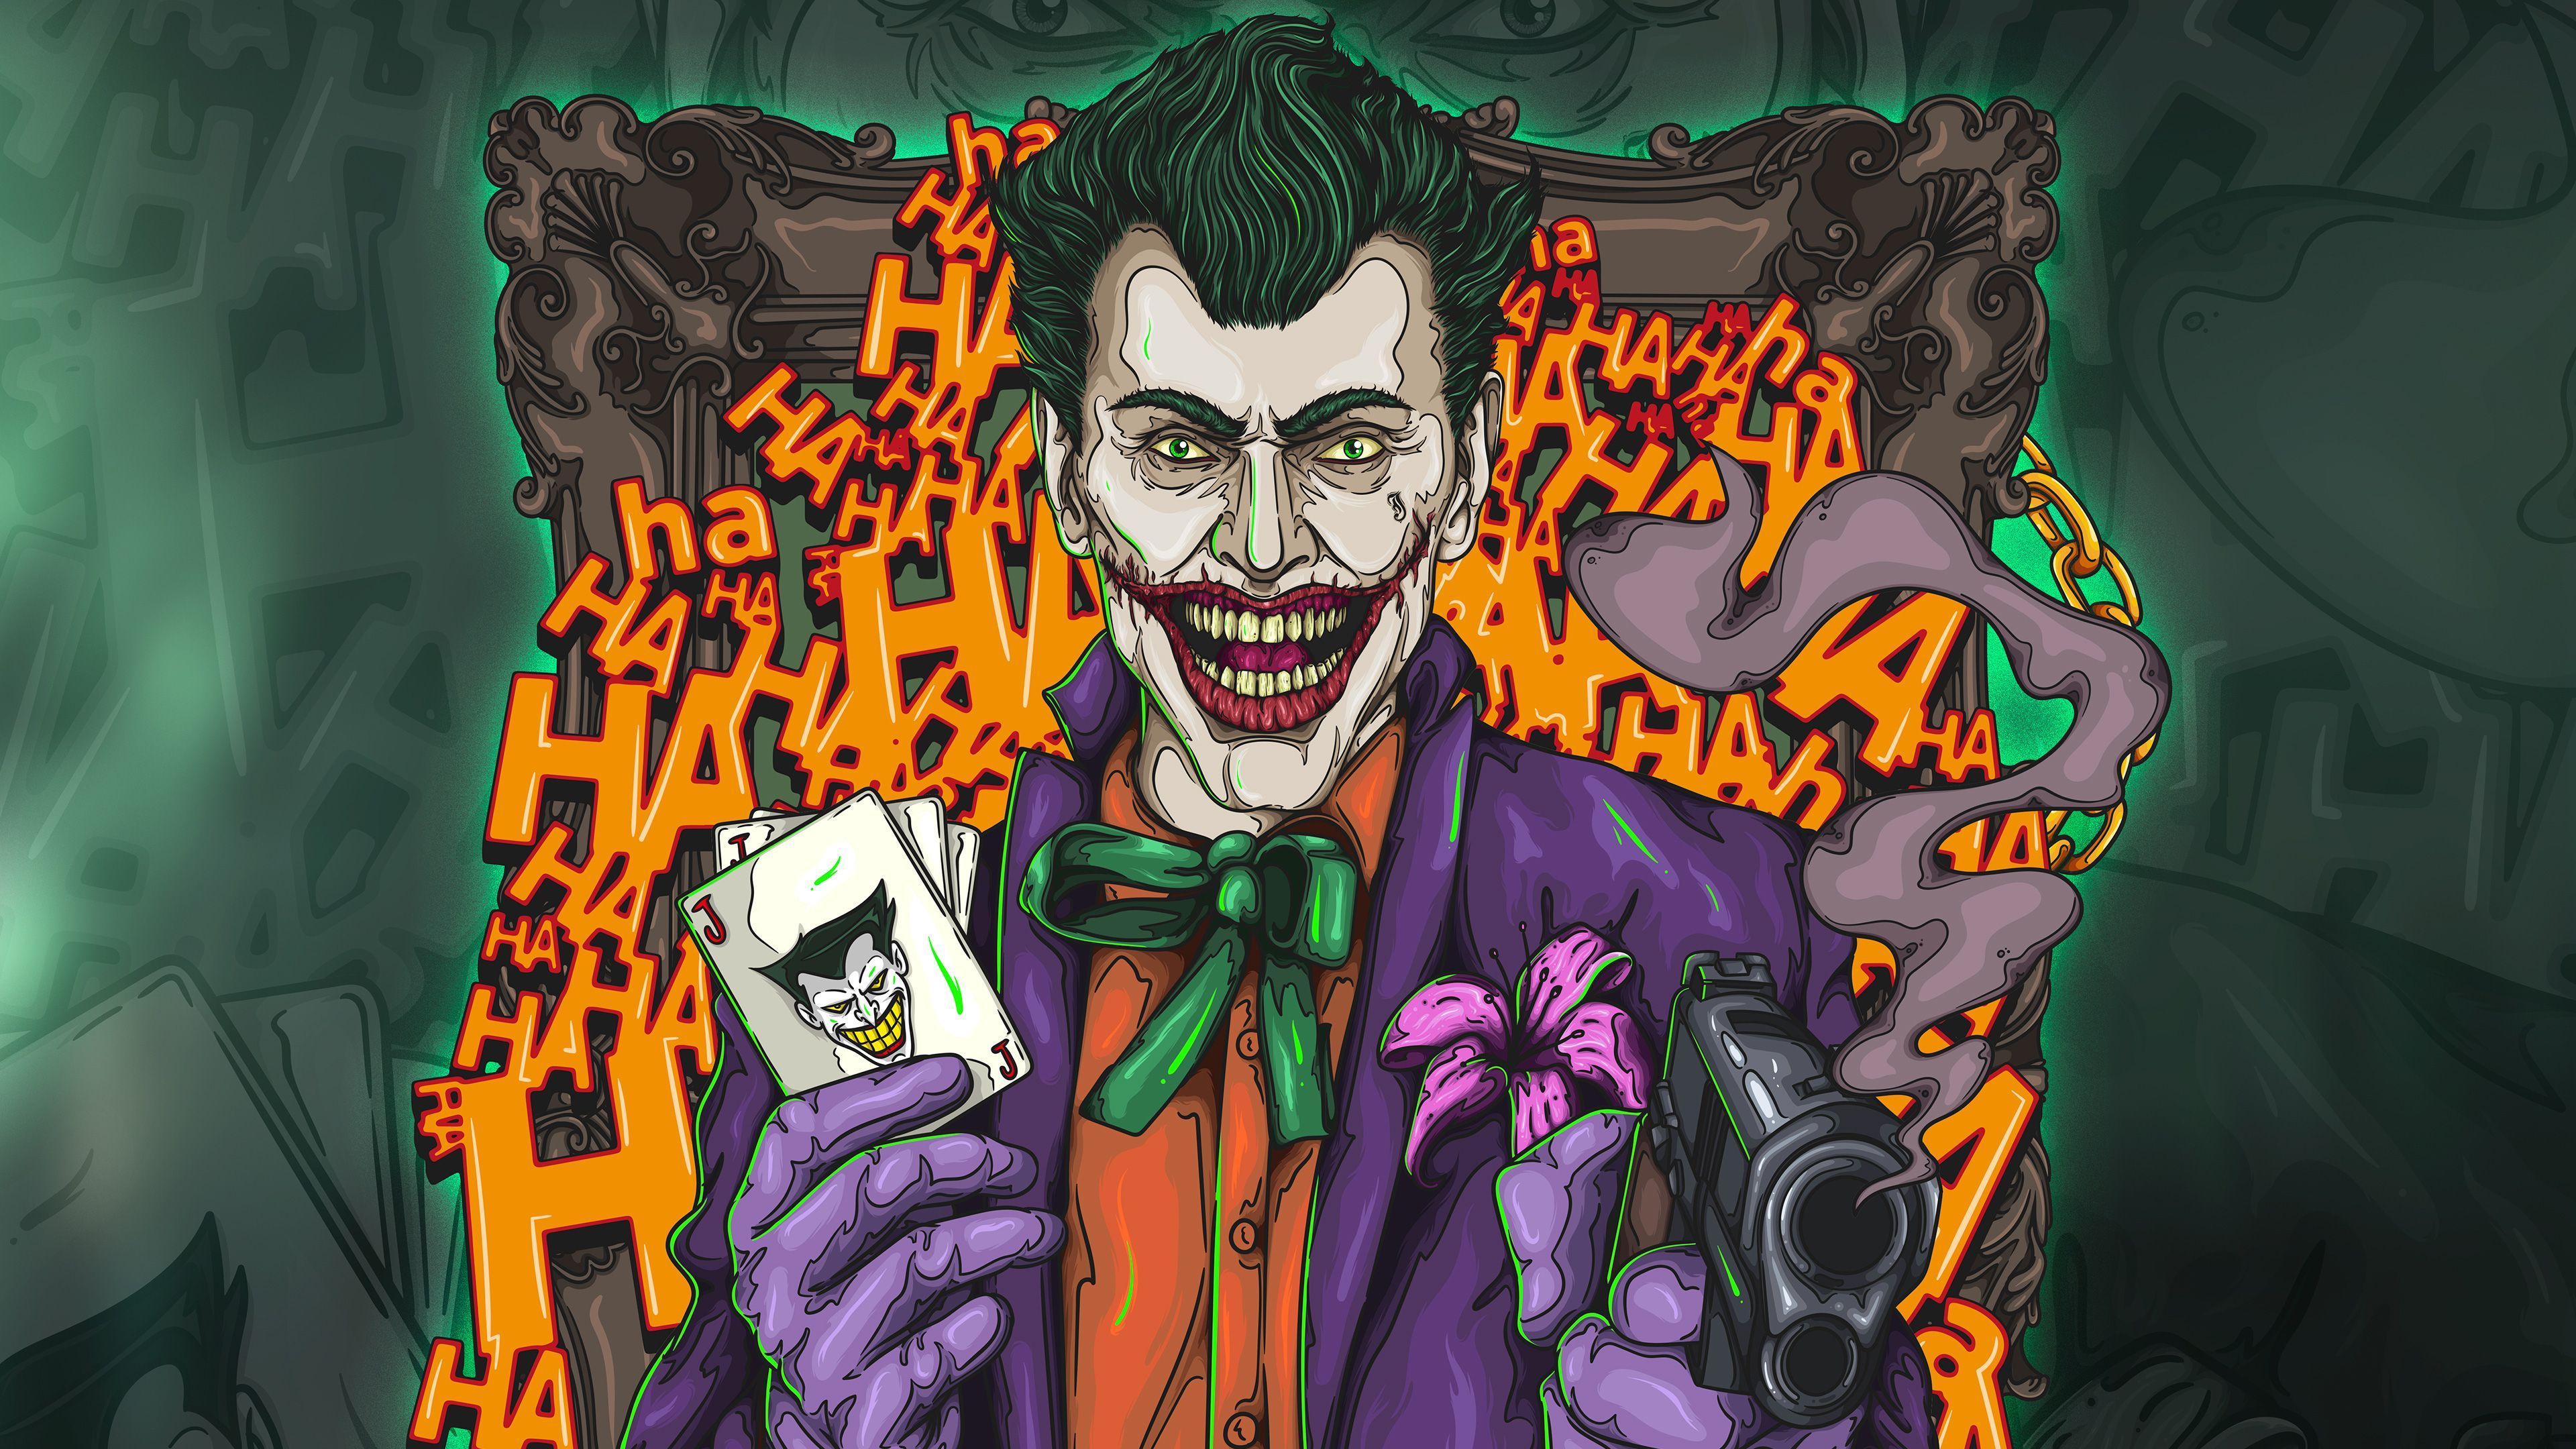 The Joker 4k Artwork Supervillain Wallpaper, Superheroes Wallpaper, Joker Wallpaper, Hd Wallpaper, Digital Art Wallp. Joker Wallpaper, Artwork, Art Wallpaper